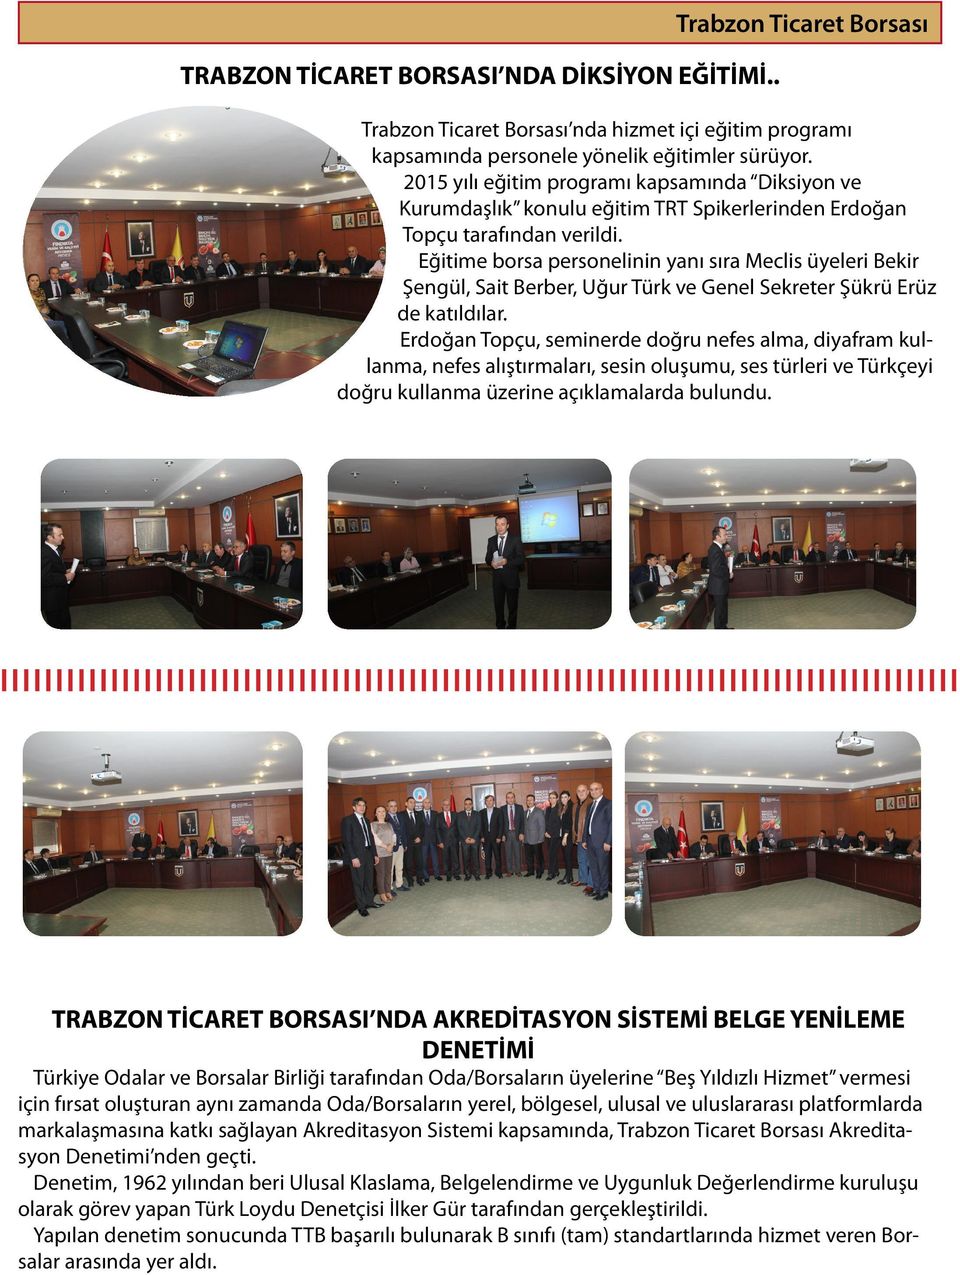 Eğitime borsa personelinin yanı sıra Meclis üyeleri Bekir Şengül, Sait Berber, Uğur Türk ve Genel Sekreter Şükrü Erüz de katıldılar.